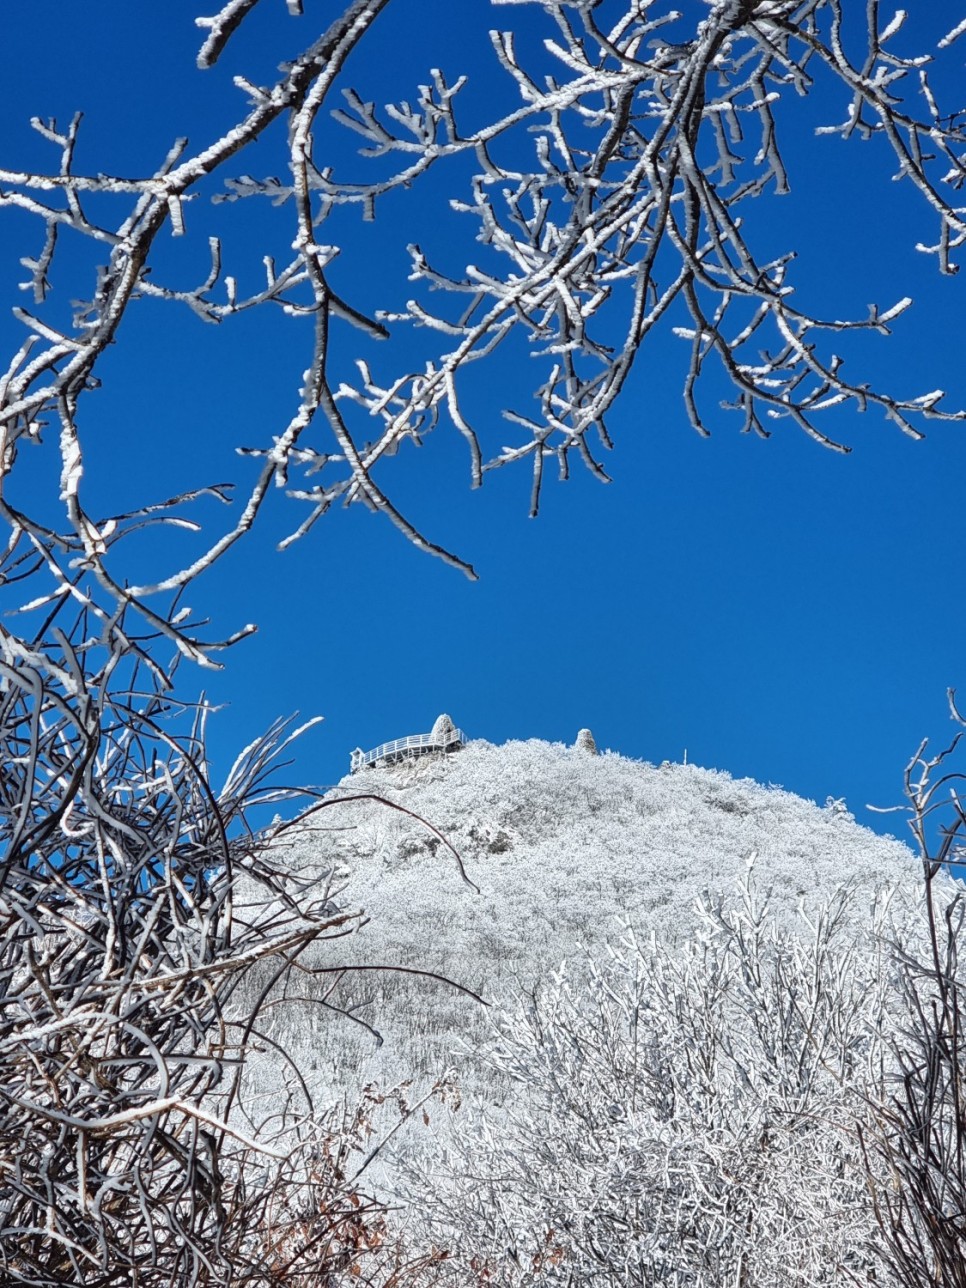 치악산 등산, 상고대와 눈꽃으로 가득했던 설경 산행 (부곡탐방코스)